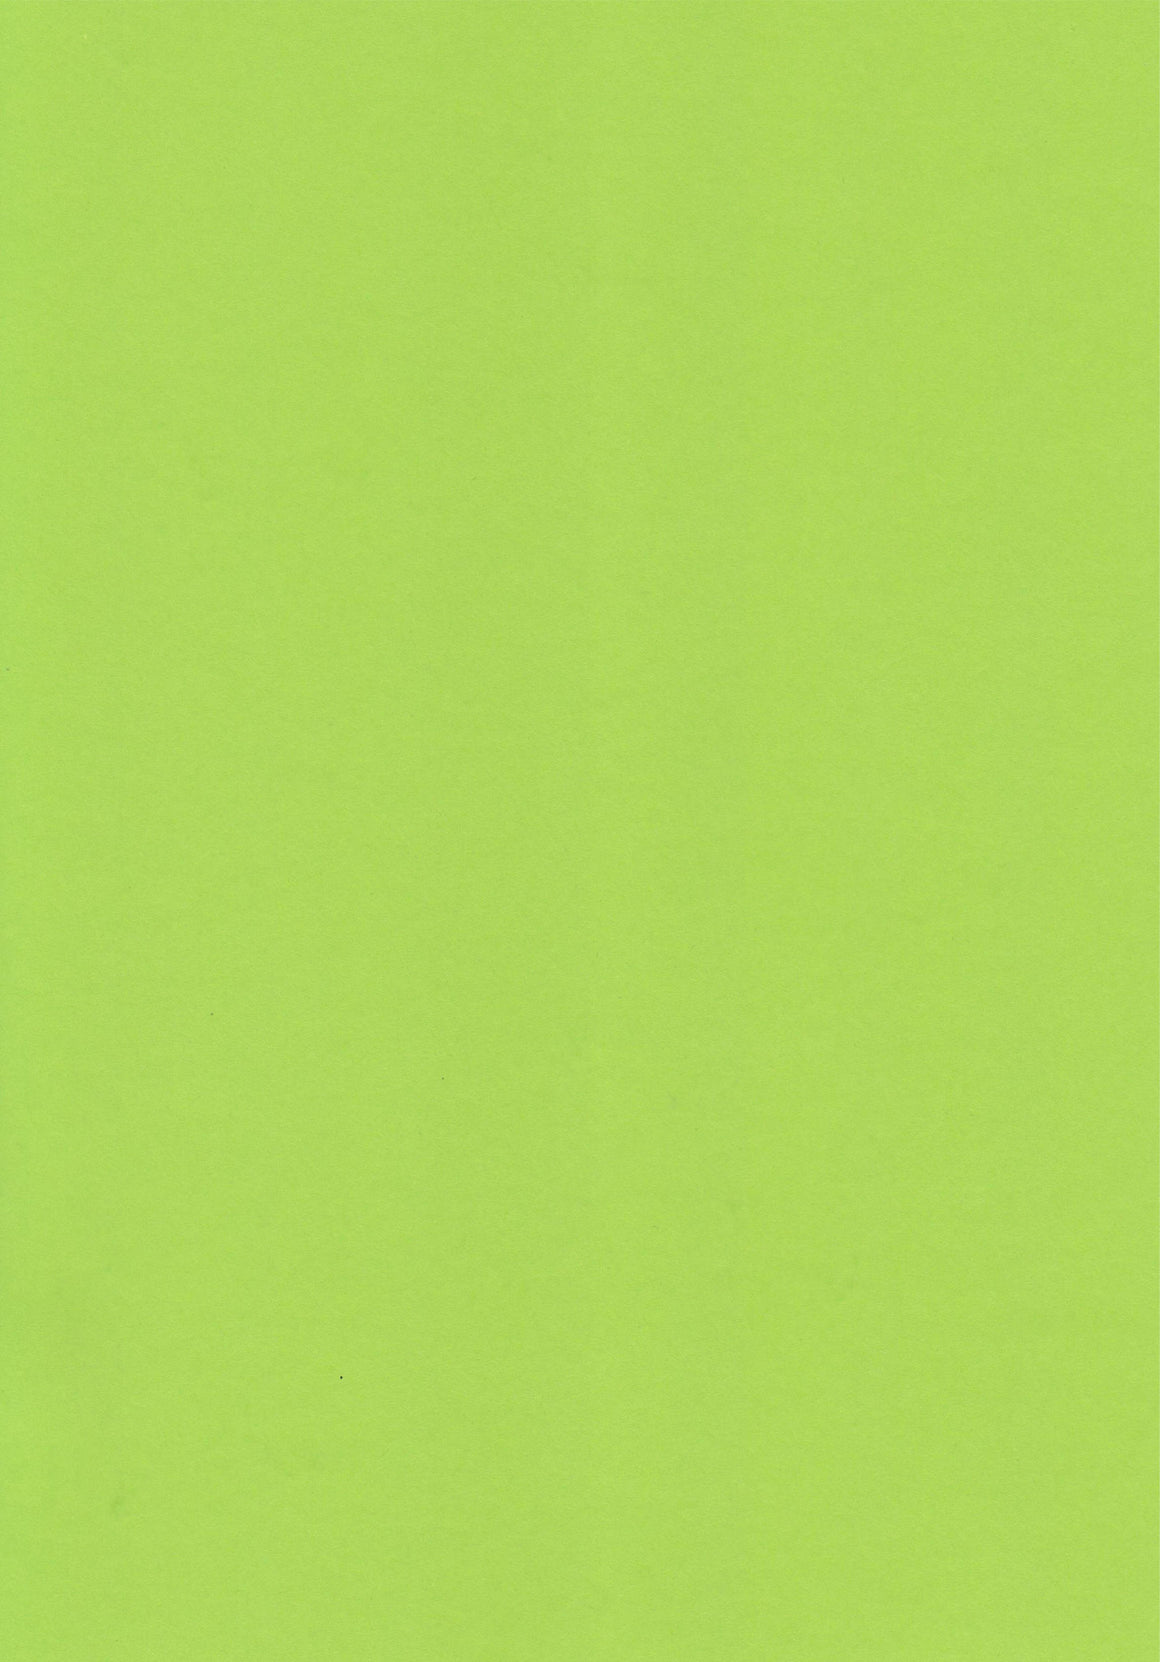 Parakeet Green A4 Card